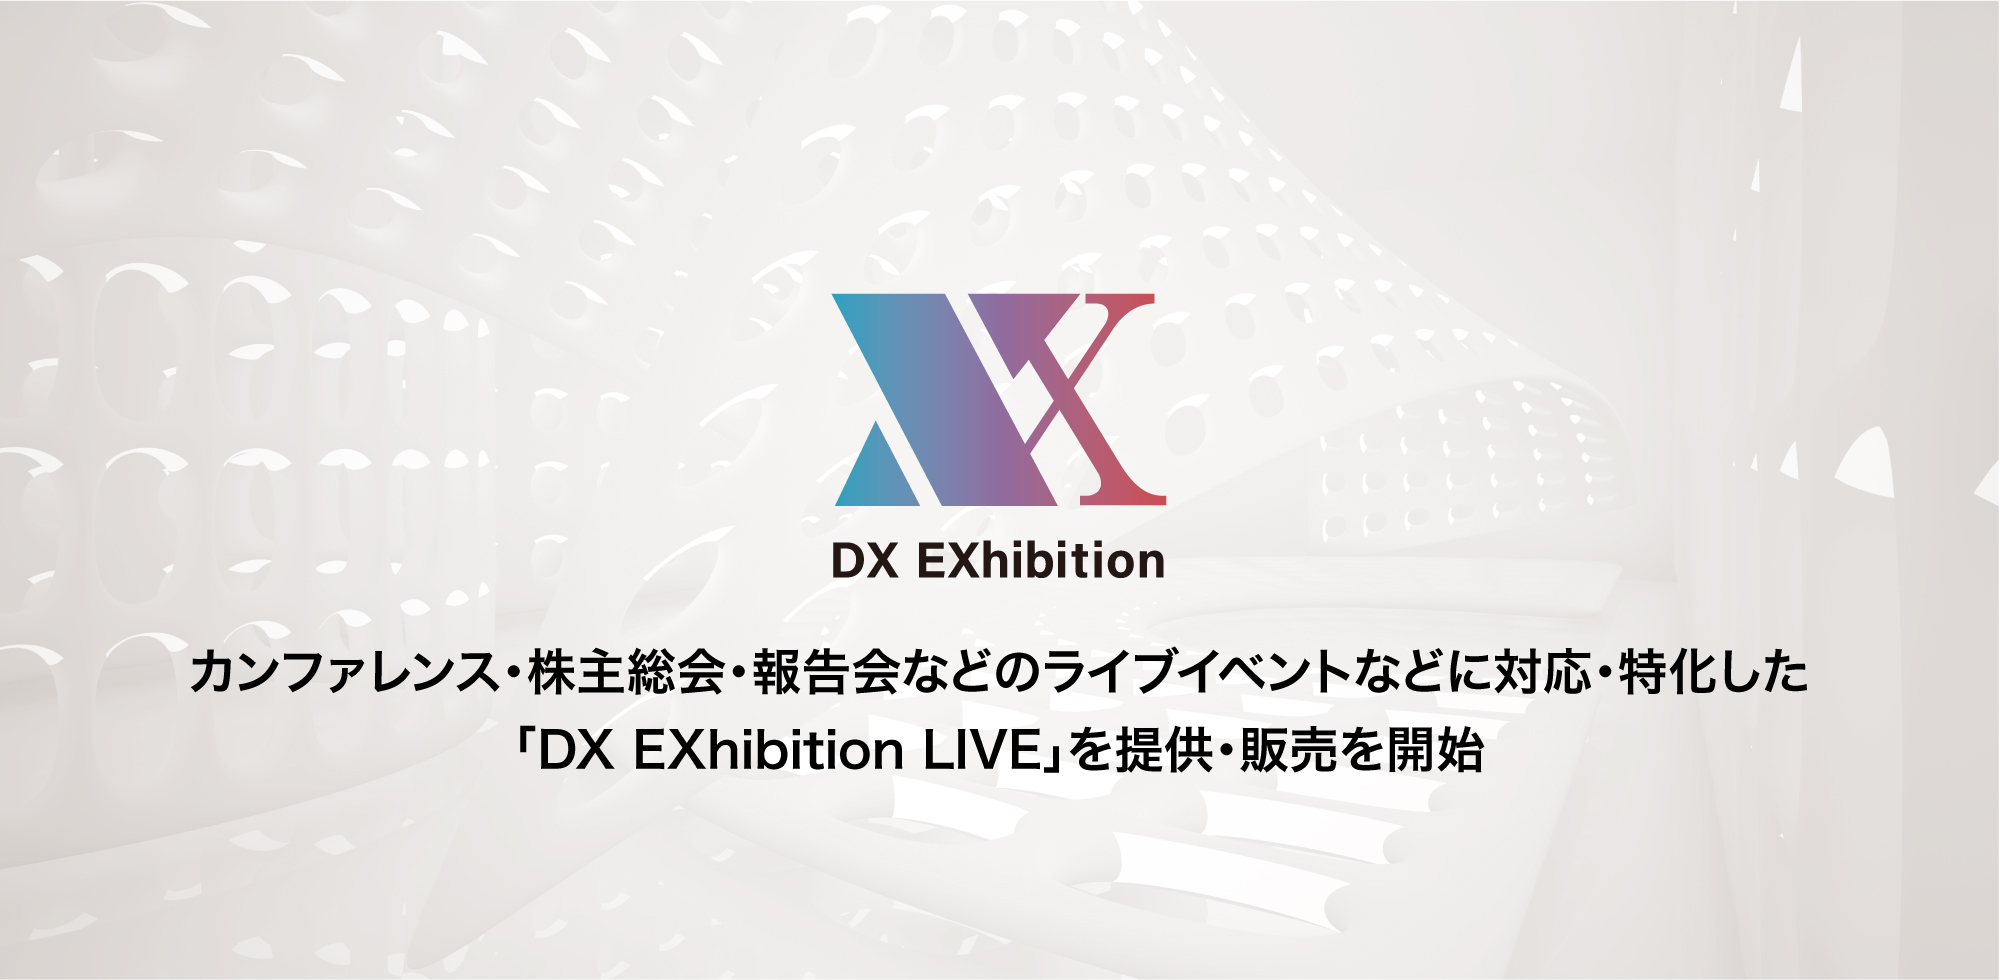 オンライン・バーチャル展示会サービス「DX EXhibition」。カンファレンス・株主総会・報告会などライブイベントのオンライン化に対応・特化した「DX EXhibition LIVE」を販売開始。